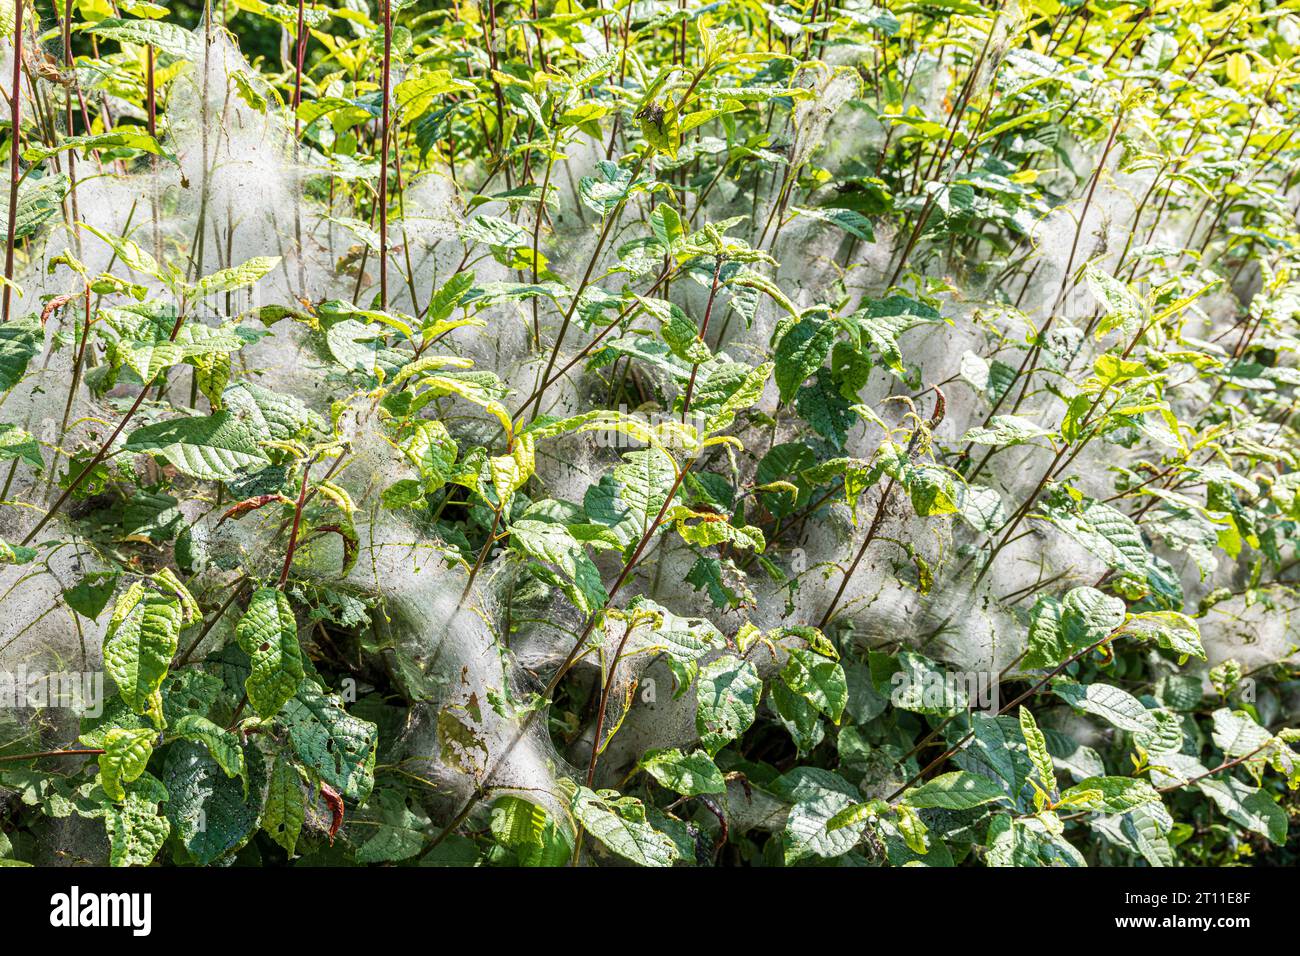 Une haie avec des toiles de soie ressemblant à des araignées (peut-être créées par des chenilles issues de papillons d'Ermine Yponomeutidae) au début de juin à Cumbria, Angleterre Royaume-Uni. Banque D'Images